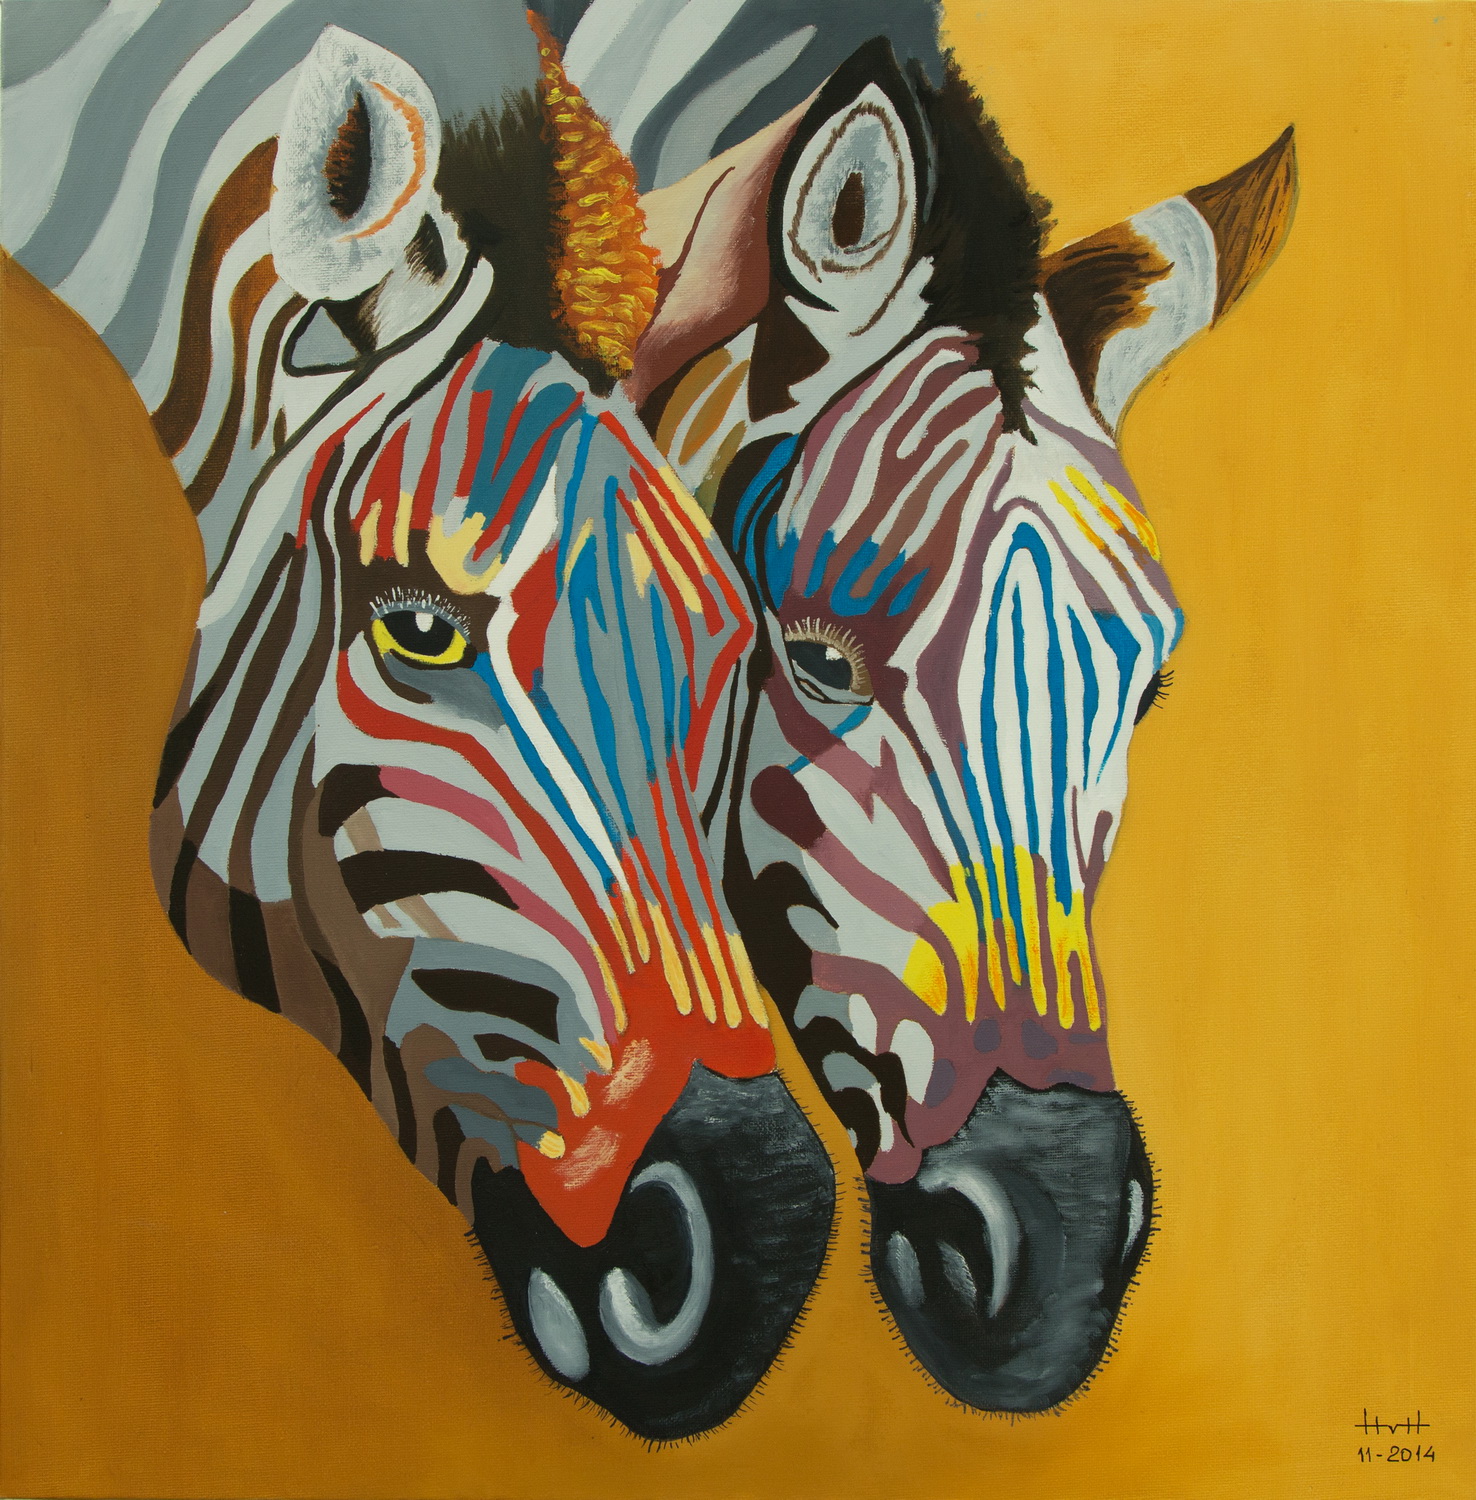 hans-van-hertom-zebras